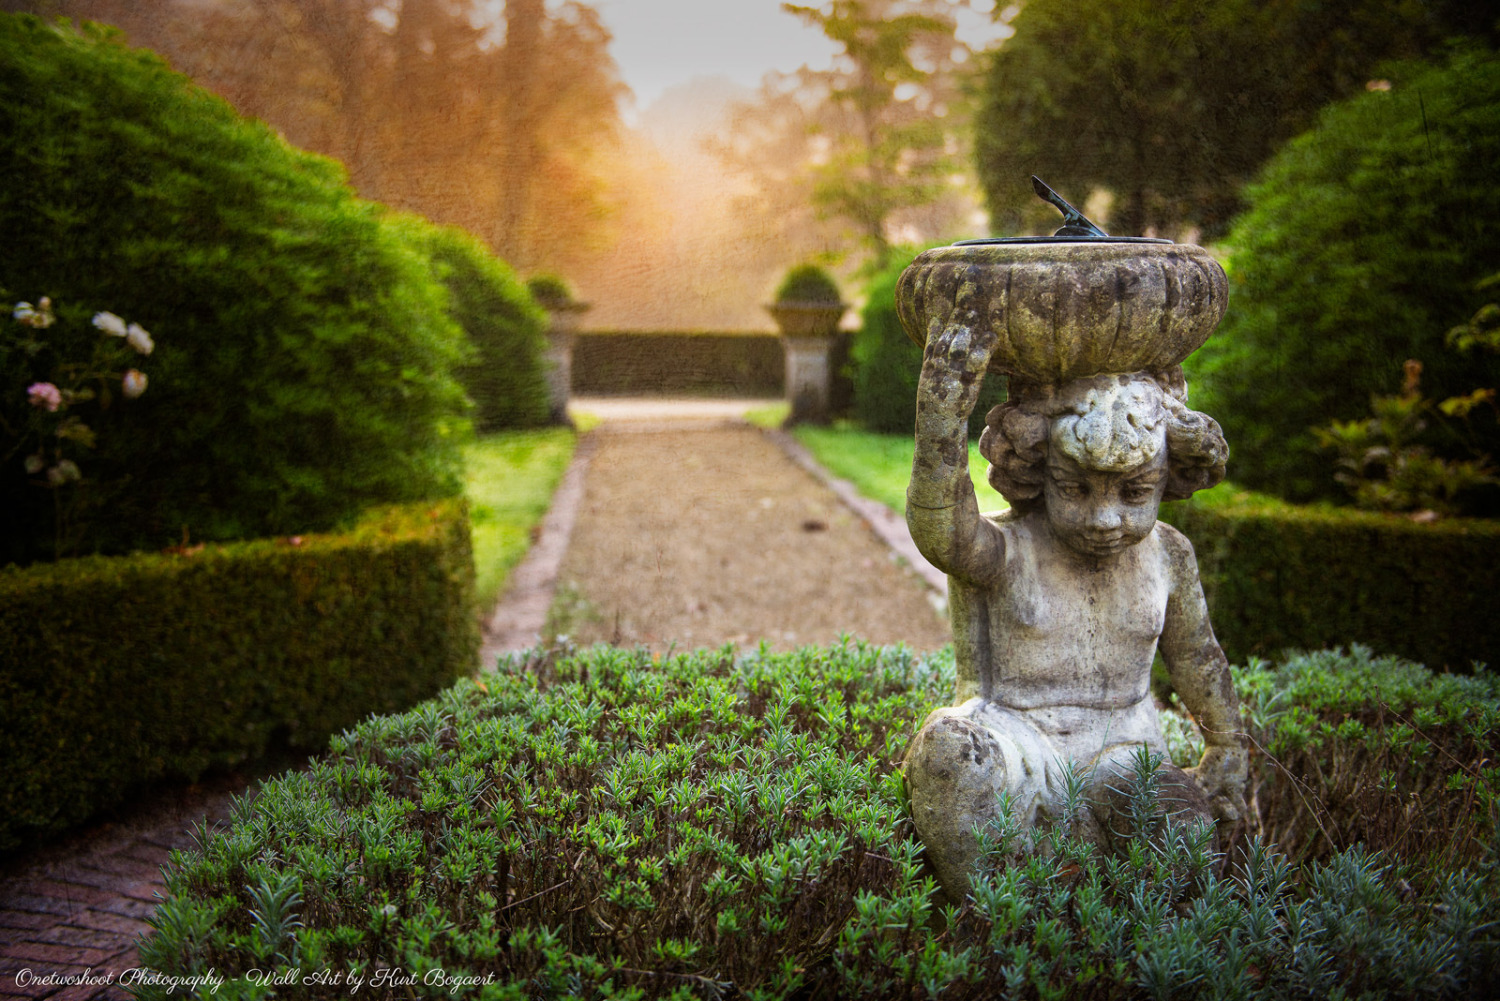 Klein standbeeldje met zonnewijzer dat in de mooie tuin staat naast de villa in het domein 't Meersdael. De zon was nog aan het opkomen die ochtend waardoor er mooie sfeer en kleurschakeringen waren.